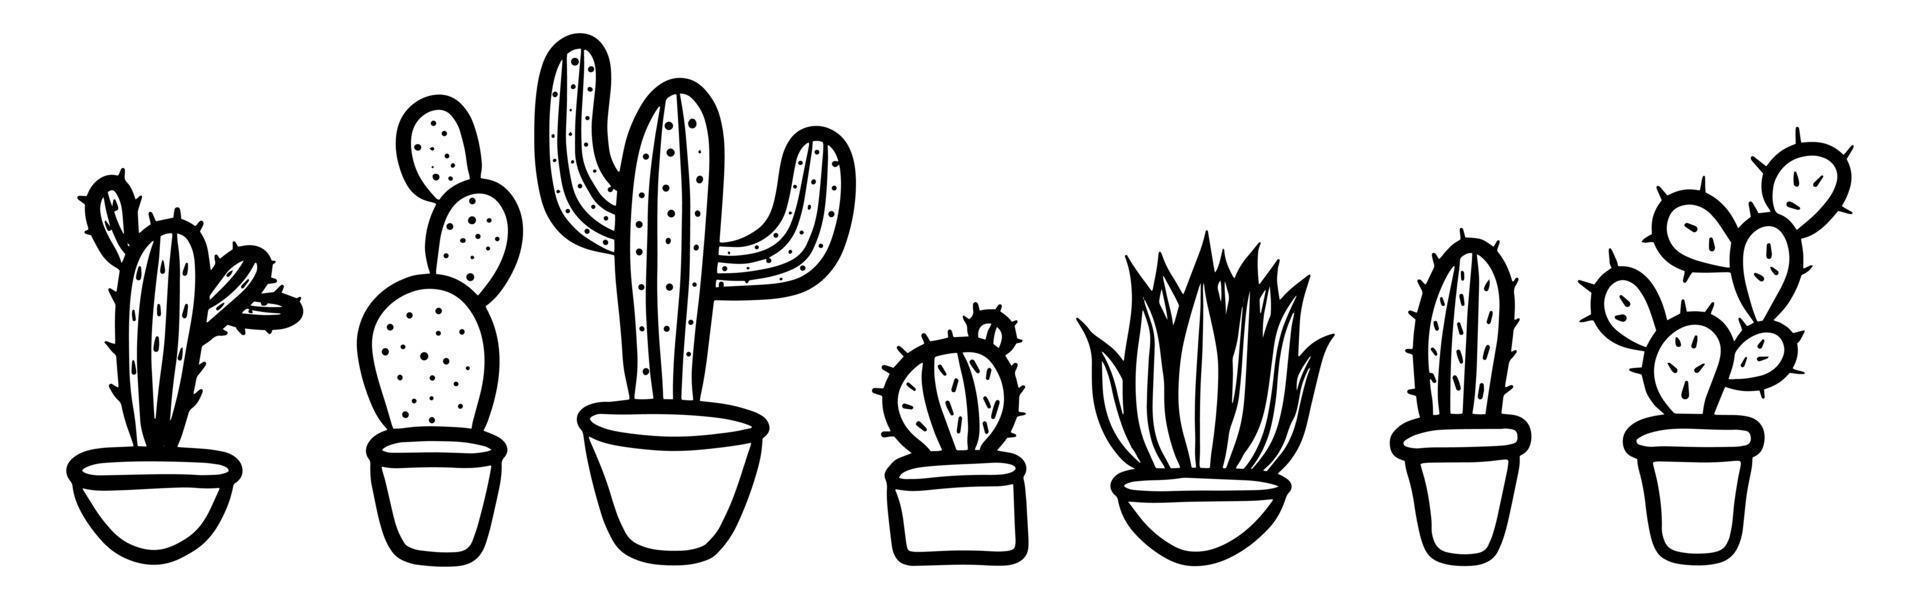 schattige doodle stijl kawaii cactus vector geïsoleerde set